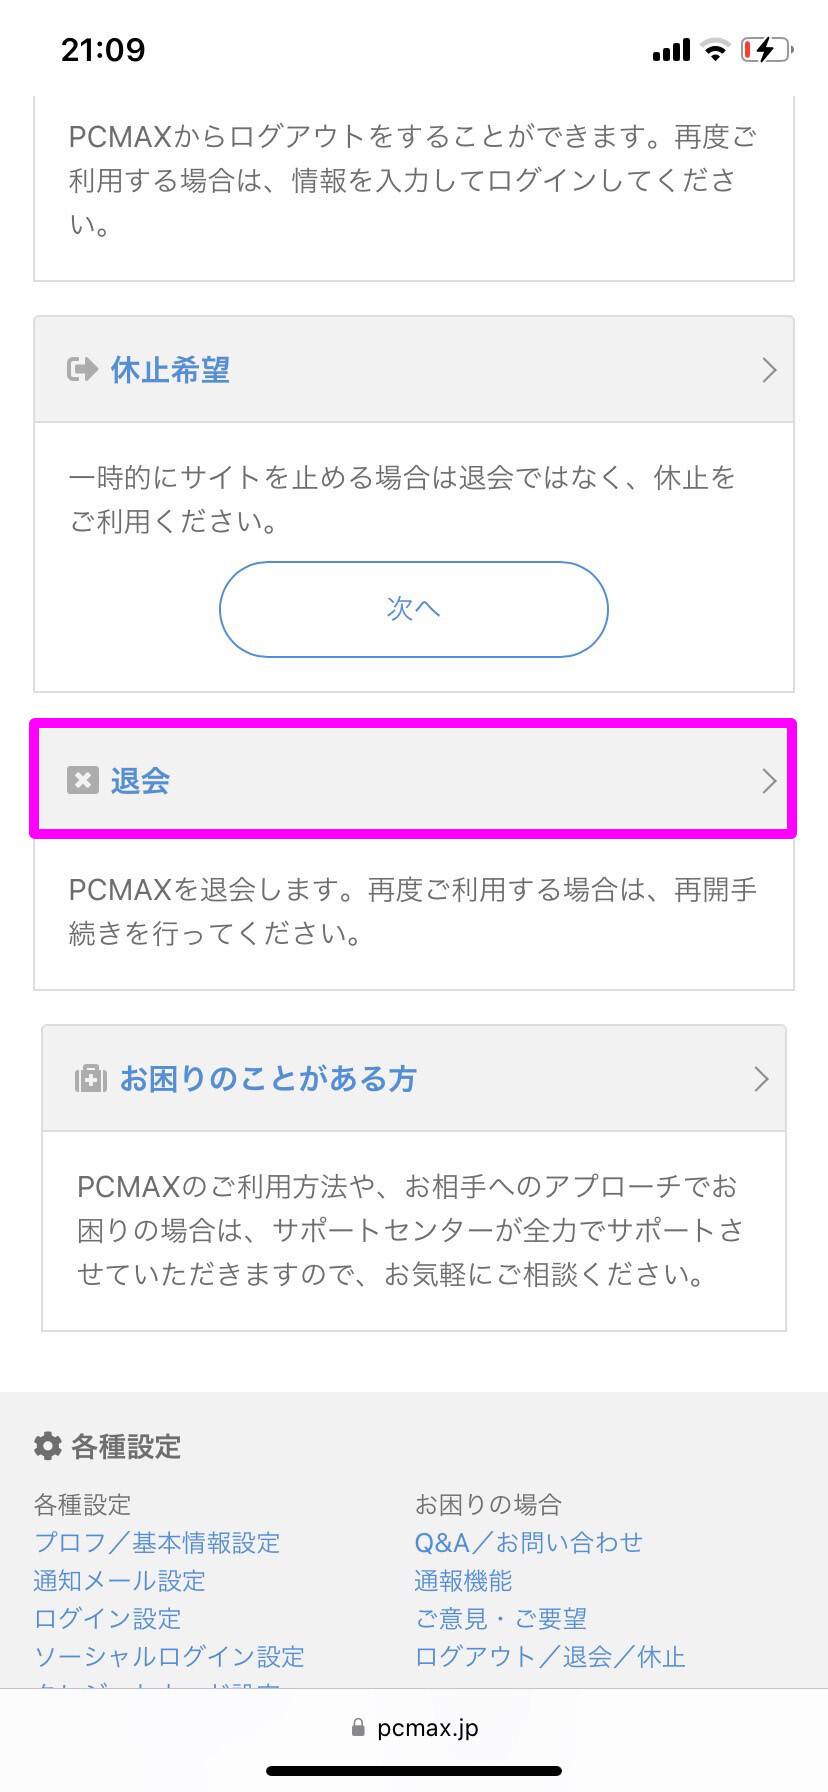 【ブラウザ版】PCMAXの退会